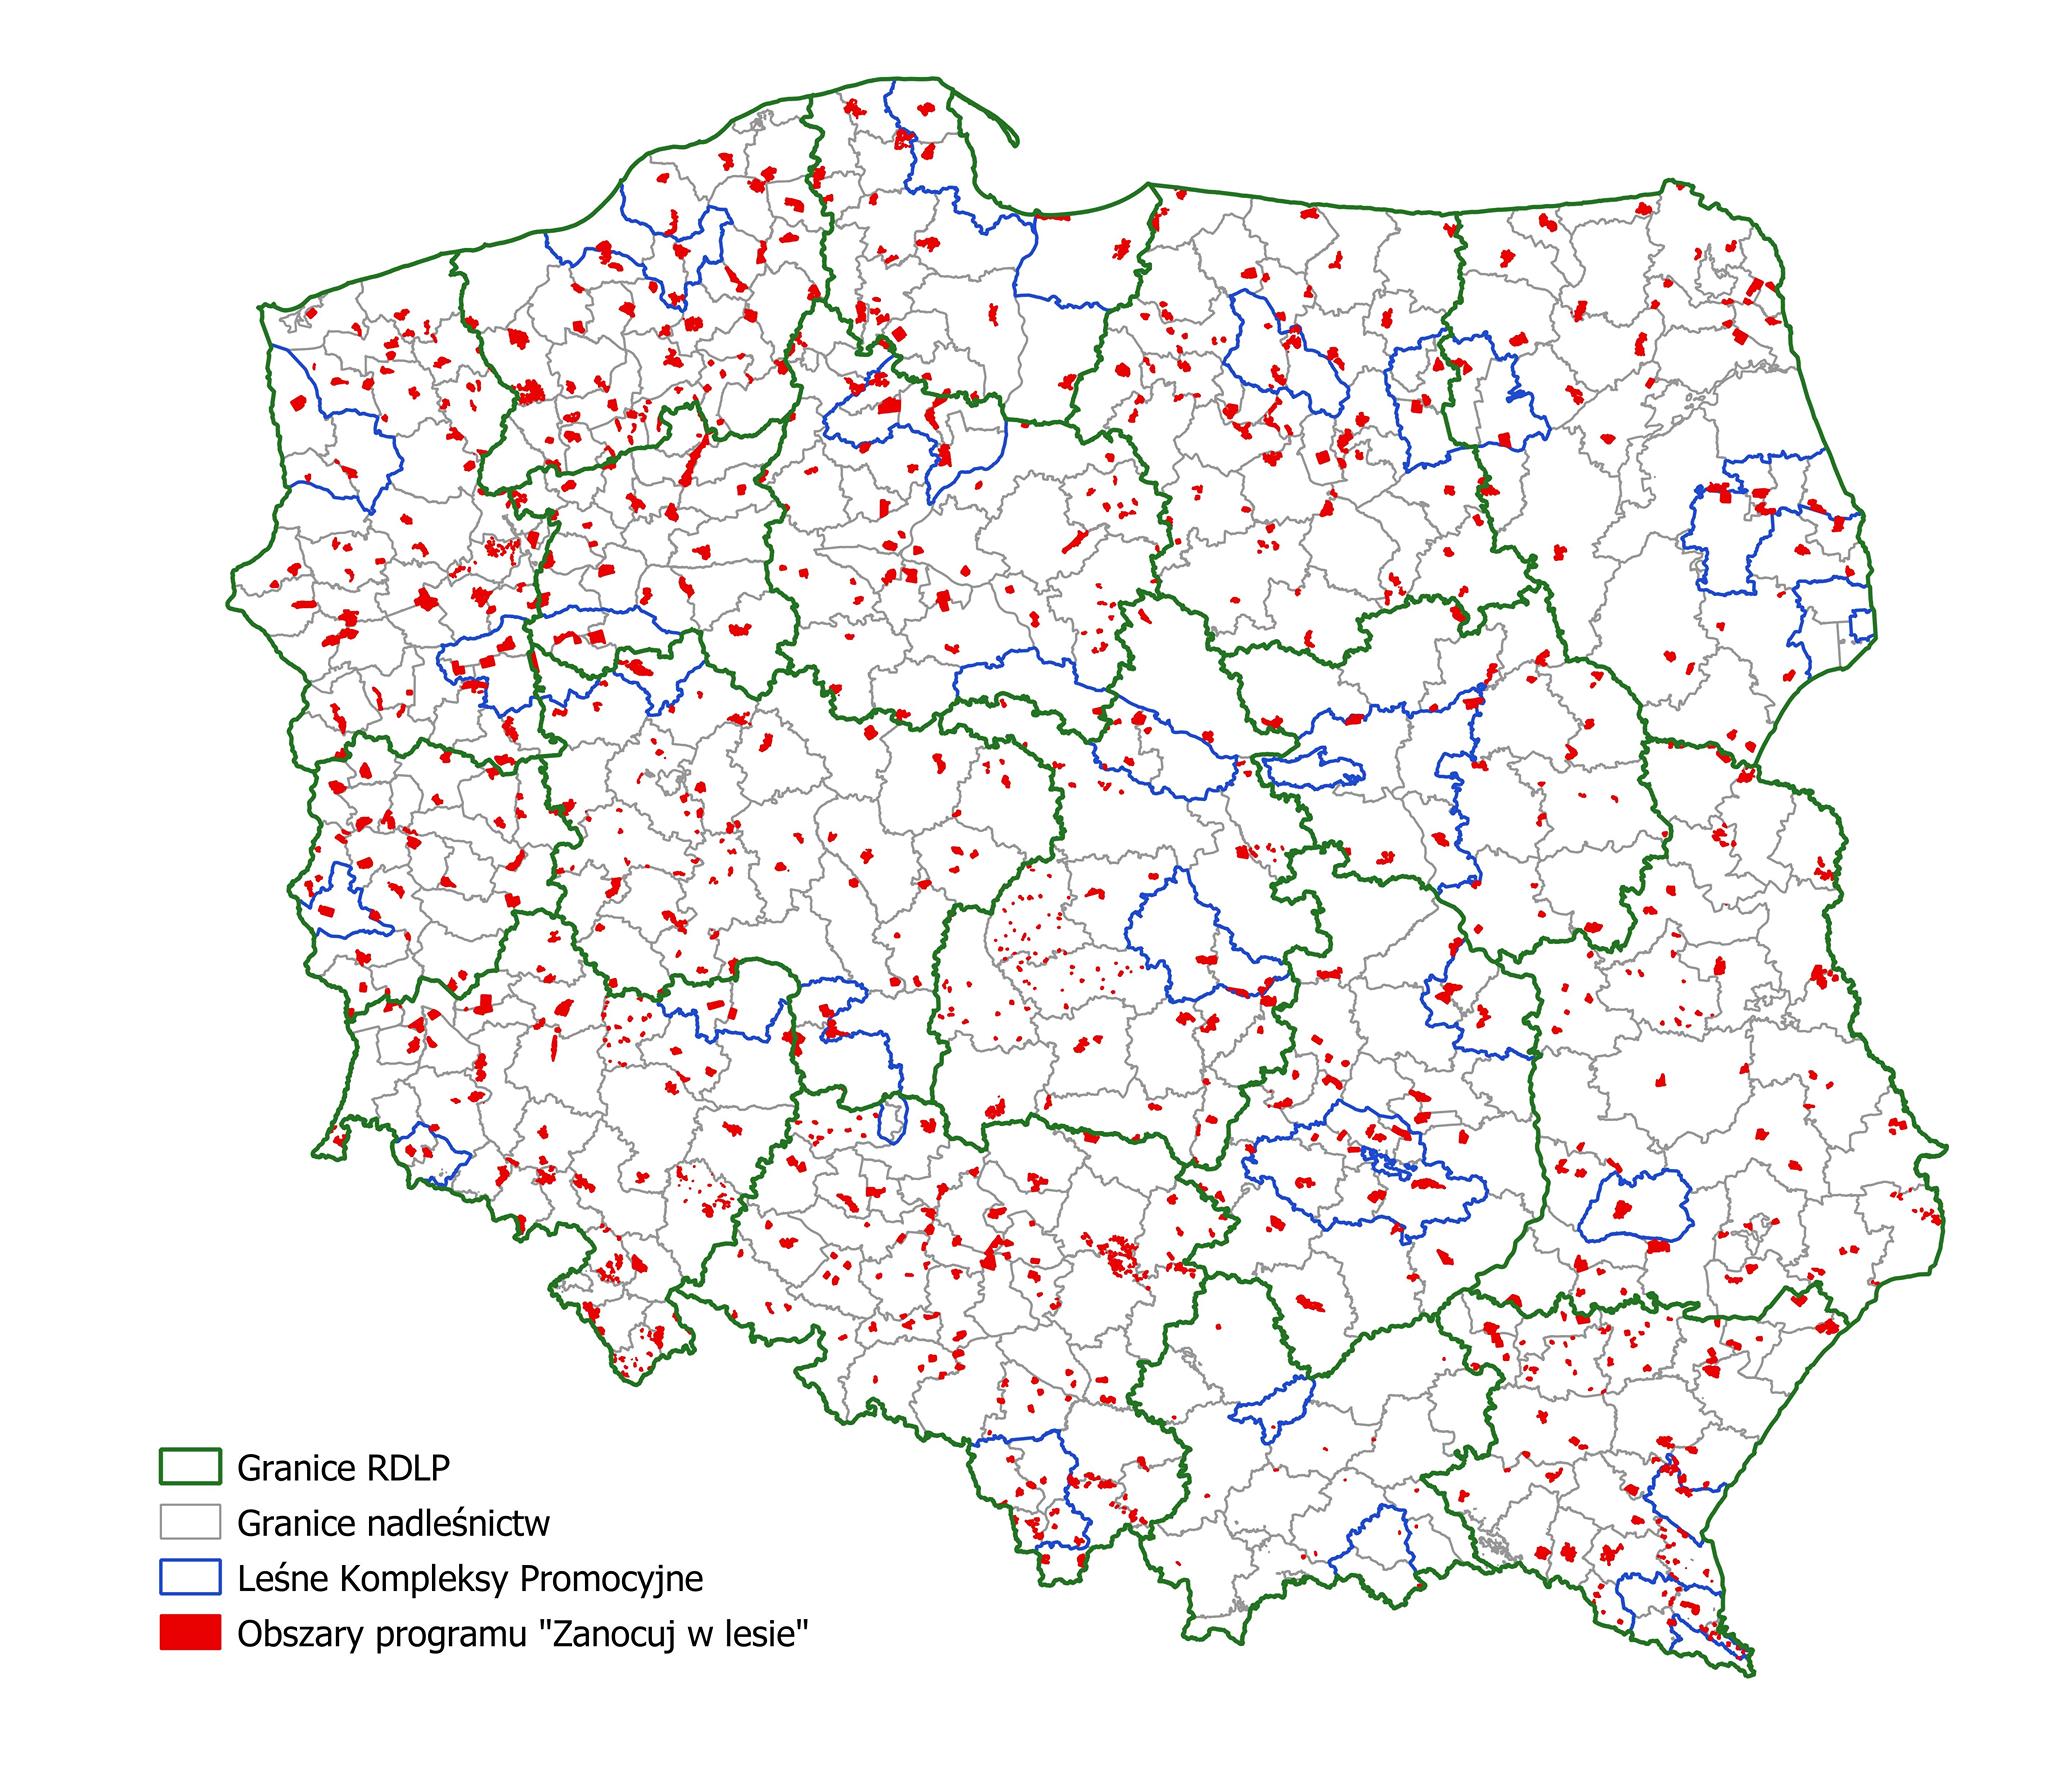 Mapa Polski z lokalizacją obszarów programu "Zanocuj w lesie". Źródło CILP.